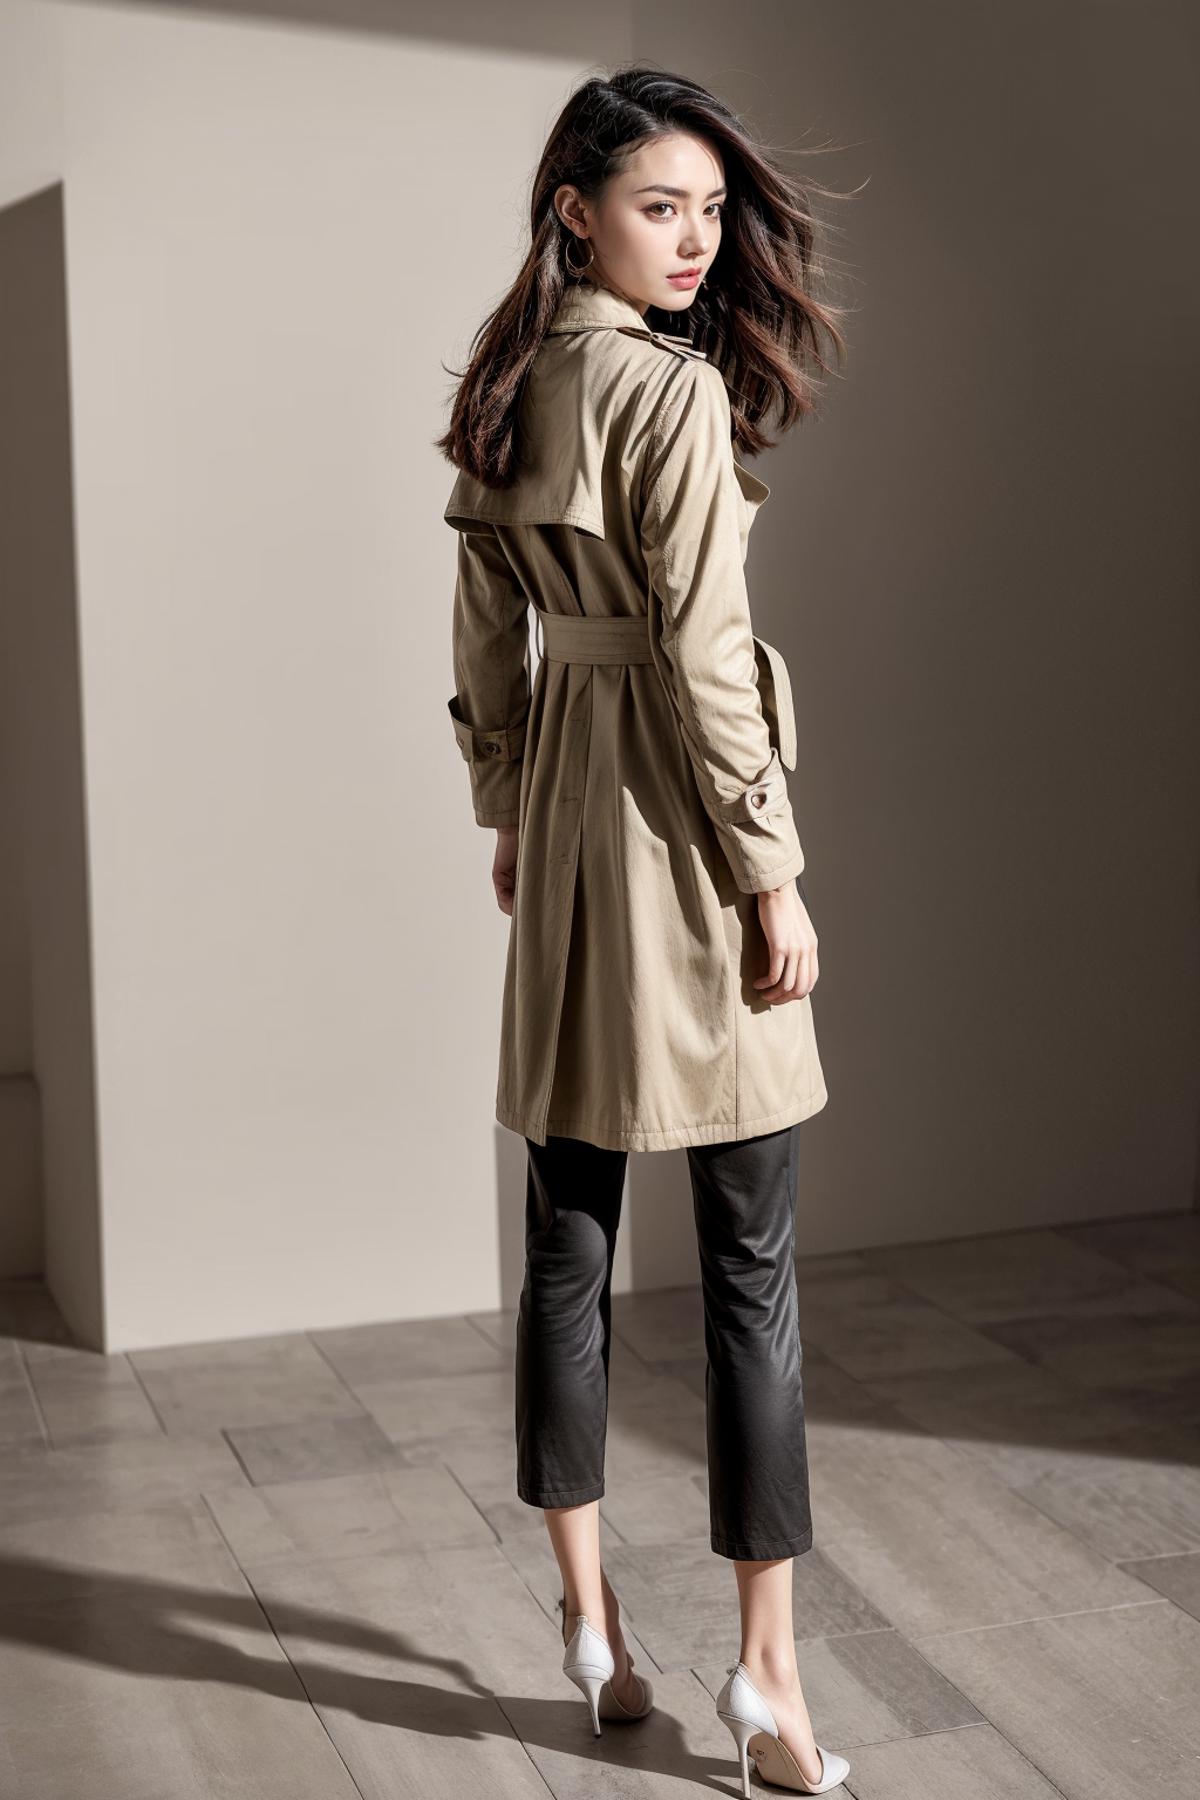 韩版时尚风衣/Korean style fashion trench coat image by KolXL